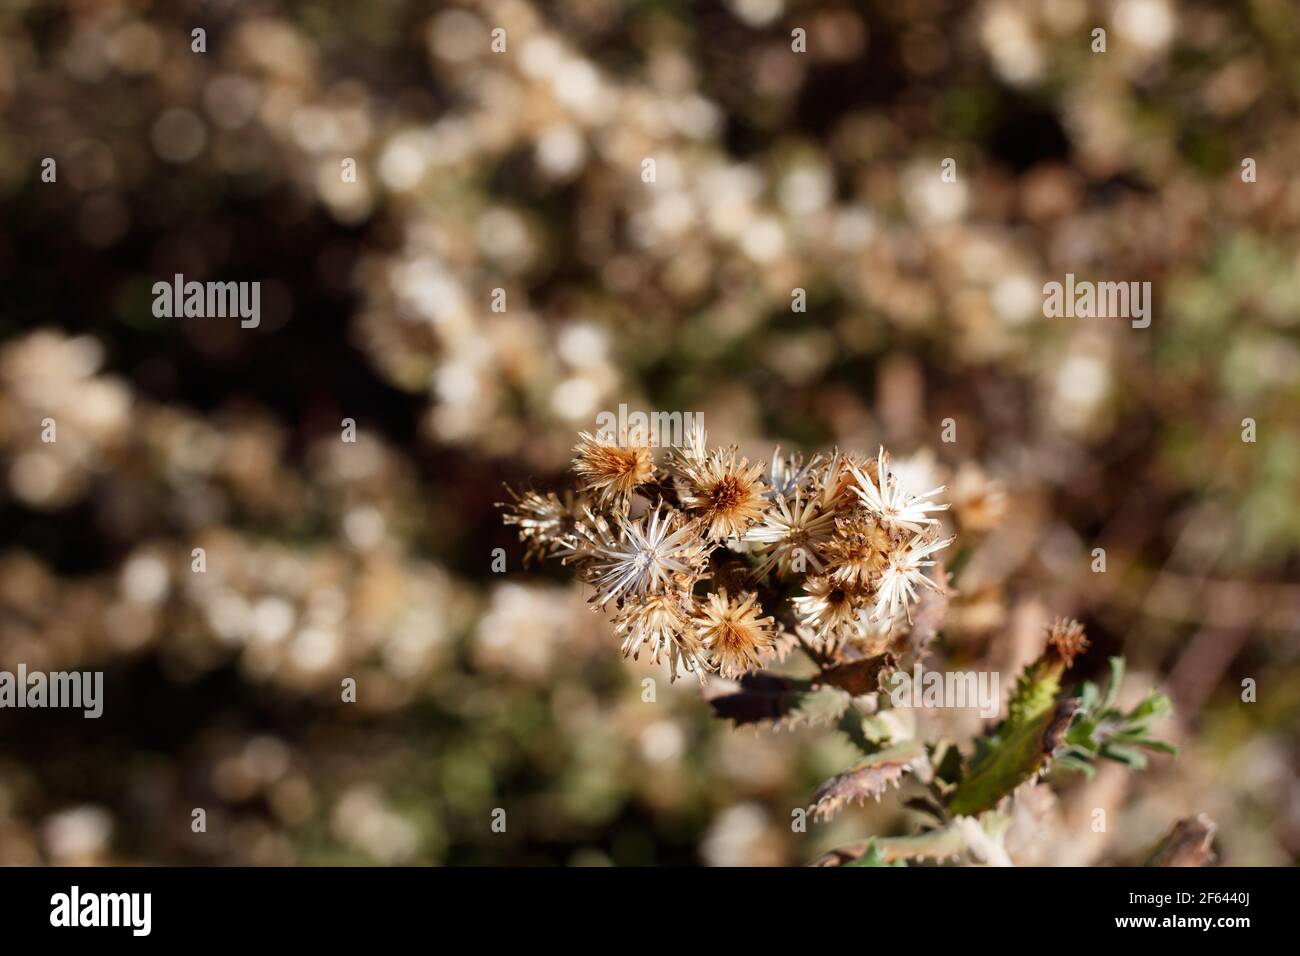 Pappiferous achene fruit of Sawtooth Goldenbush, Hazardia Squarrosa, Asteraceae, native subshrub in Topanga State Park, Santa Monica Mountains, Winter Stock Photo